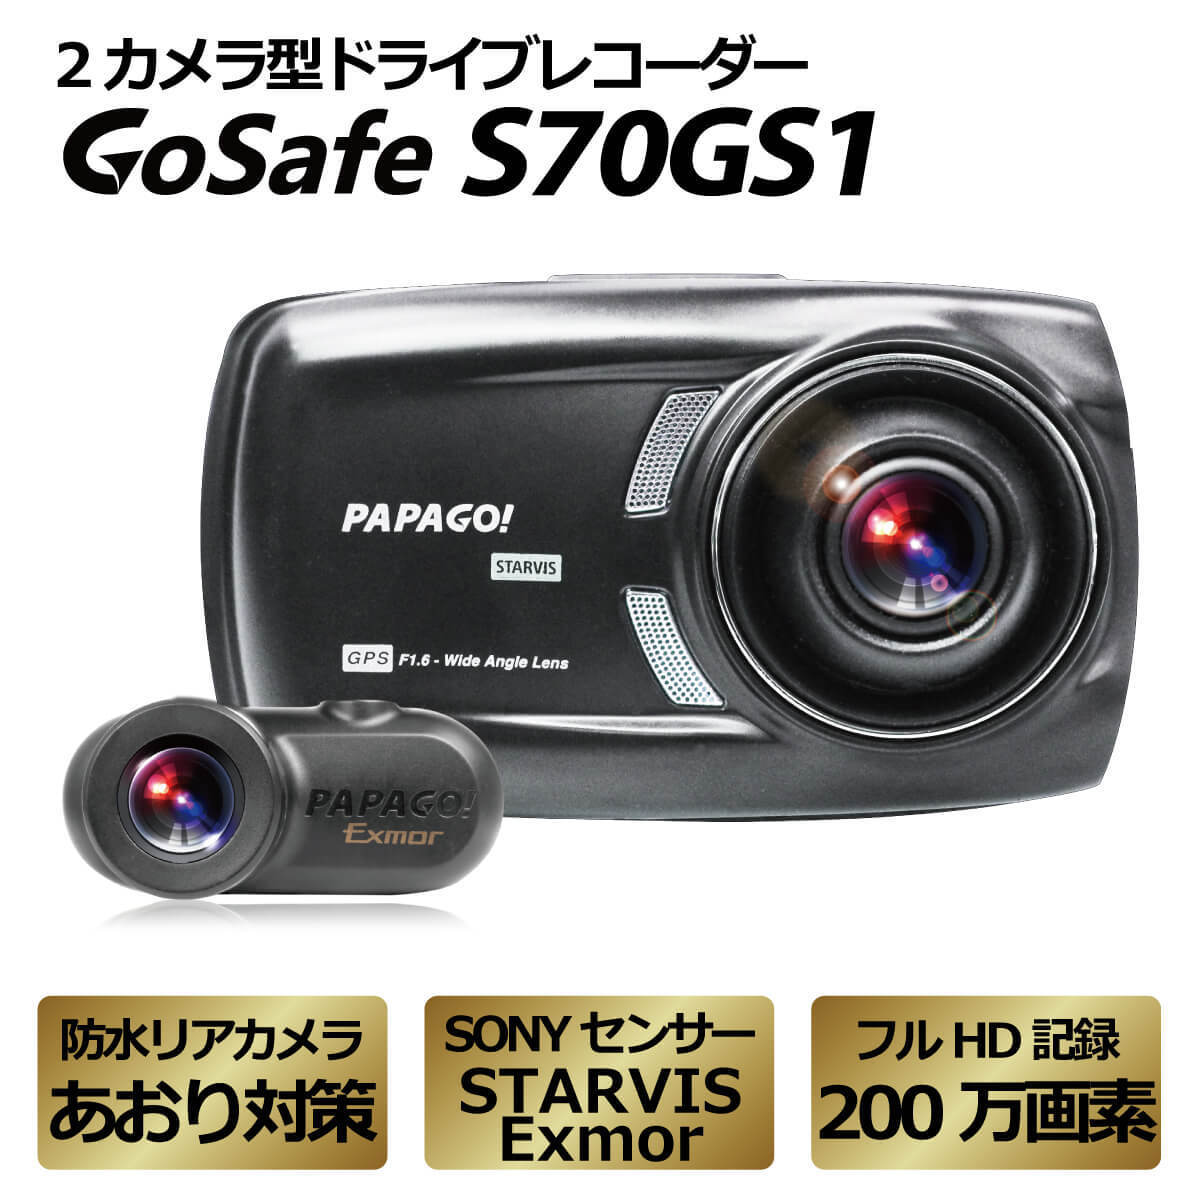 パパゴ GoSafe S70GS1 ドライブレコーダー本体の商品画像